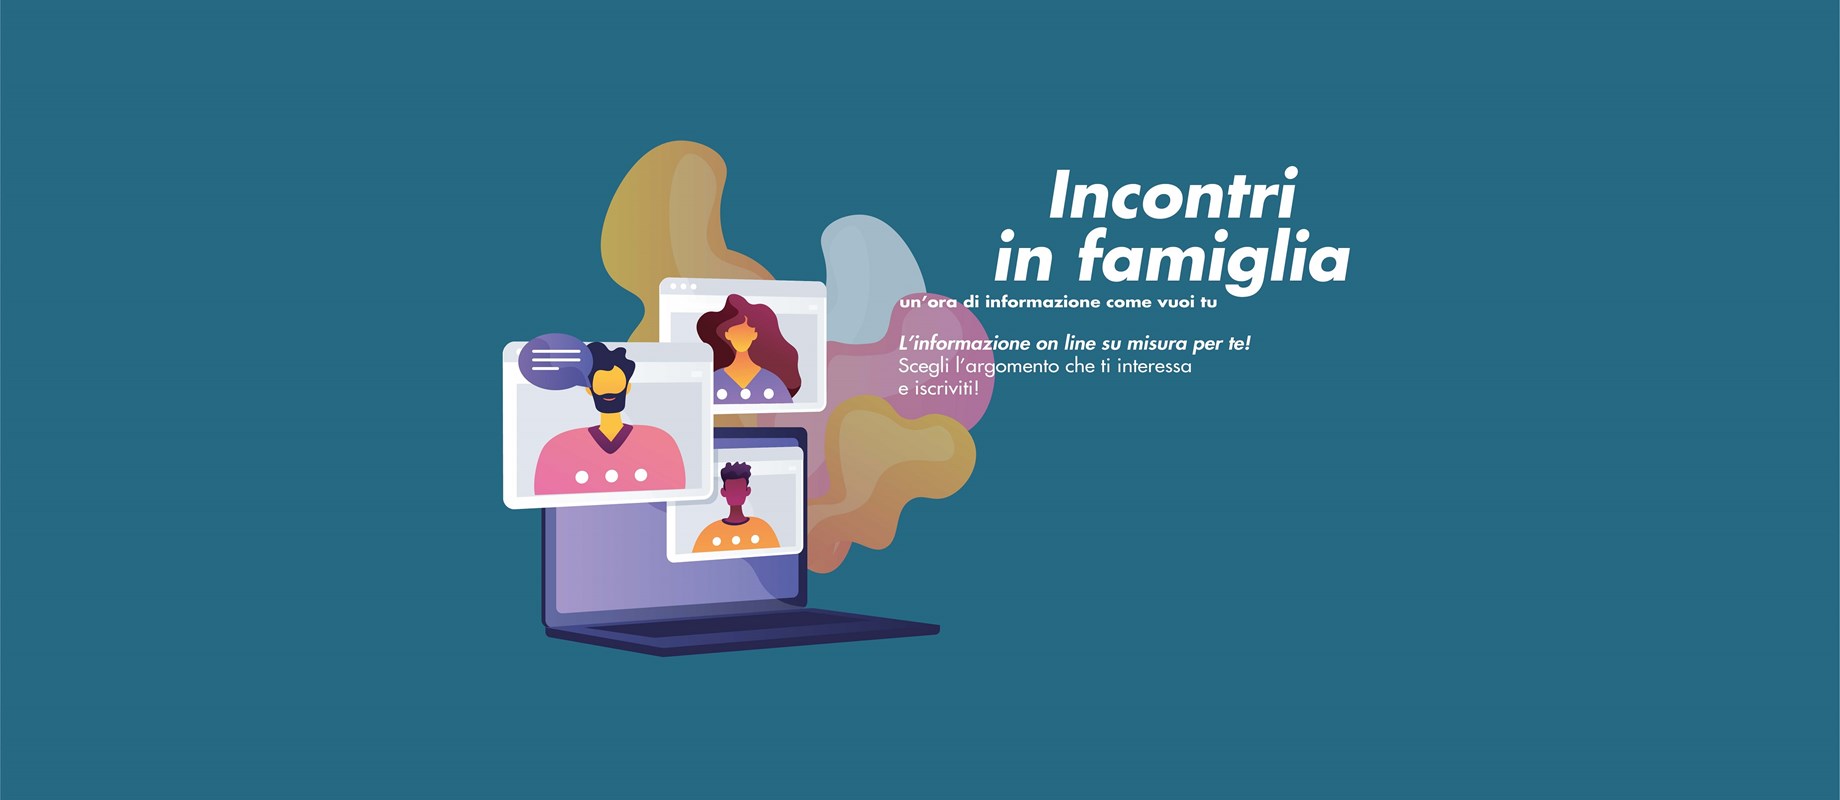 Gli incontri in famiglia: l'informazione online su misura per te! 